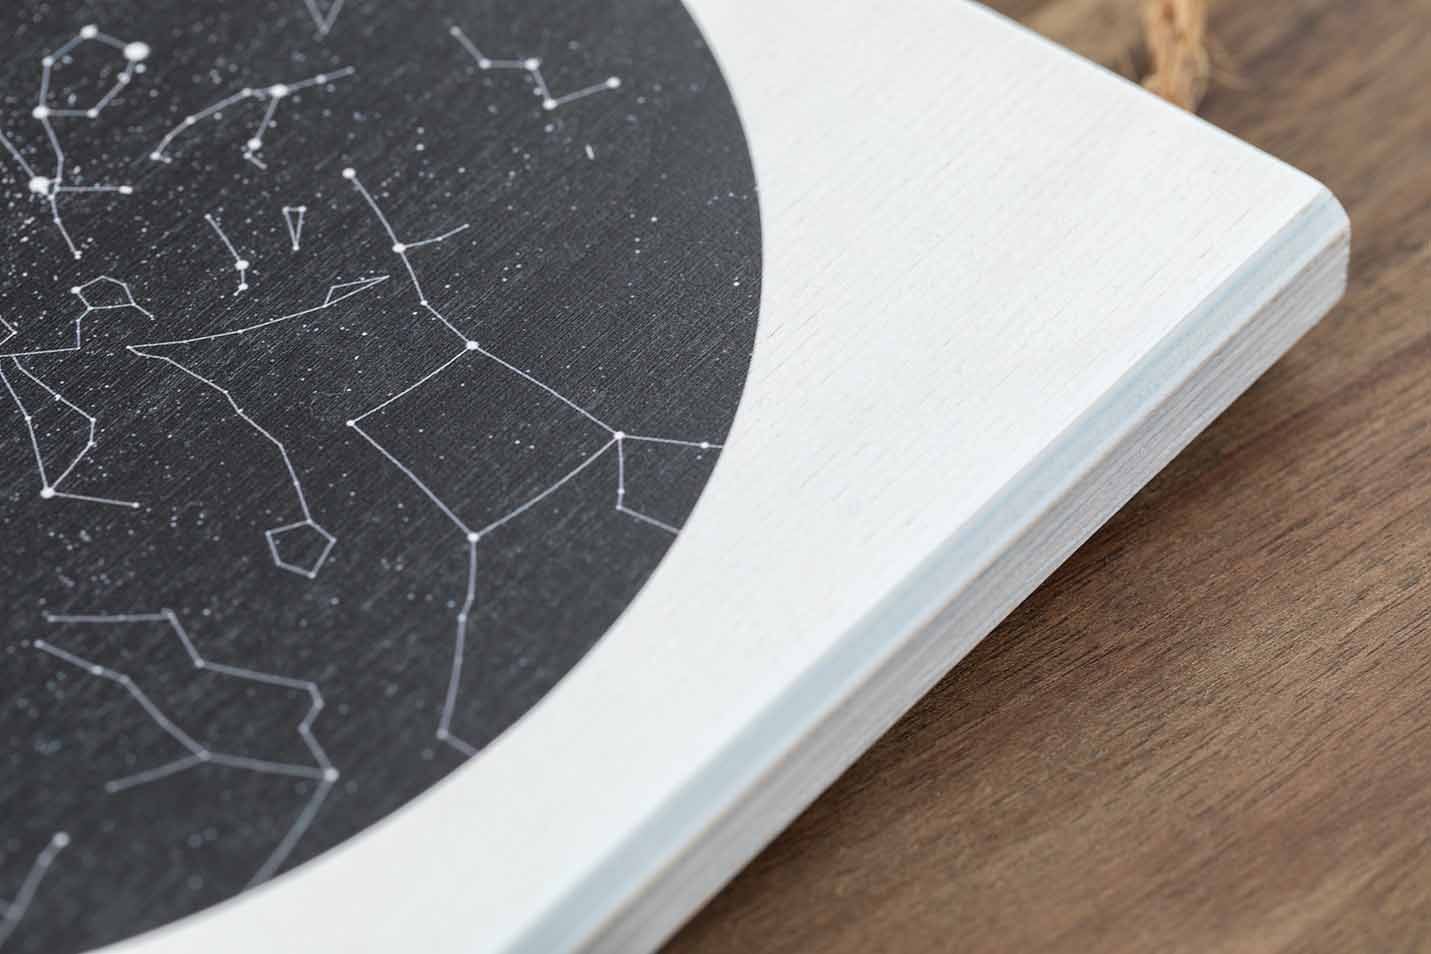 Sternenkarte erstellen